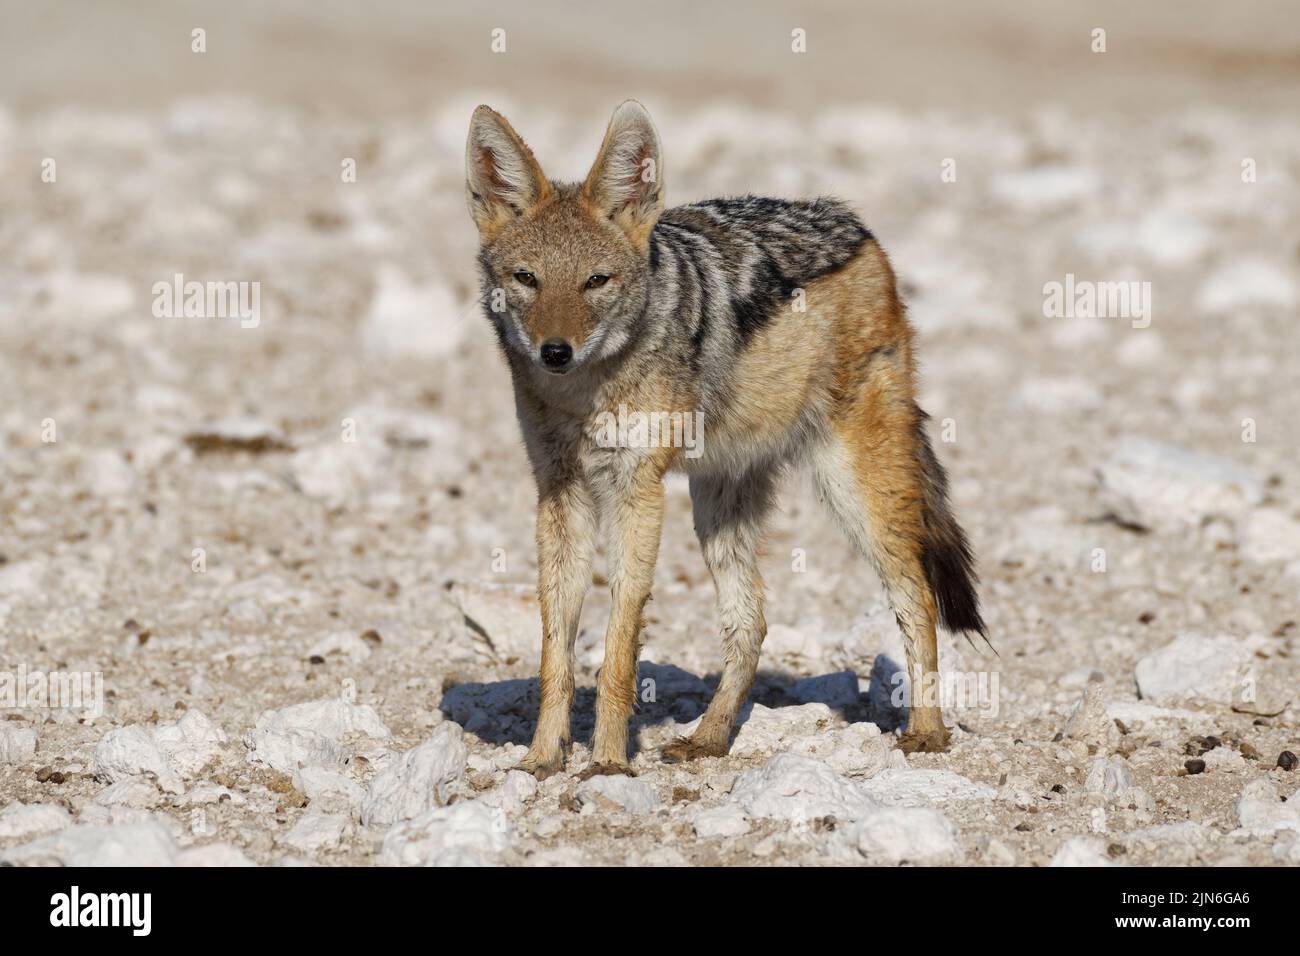 Black-backed jackal (Canis mesomelas), adult standing on arid ground, alert, Etosha National Park, Namibia, Africa Stock Photo